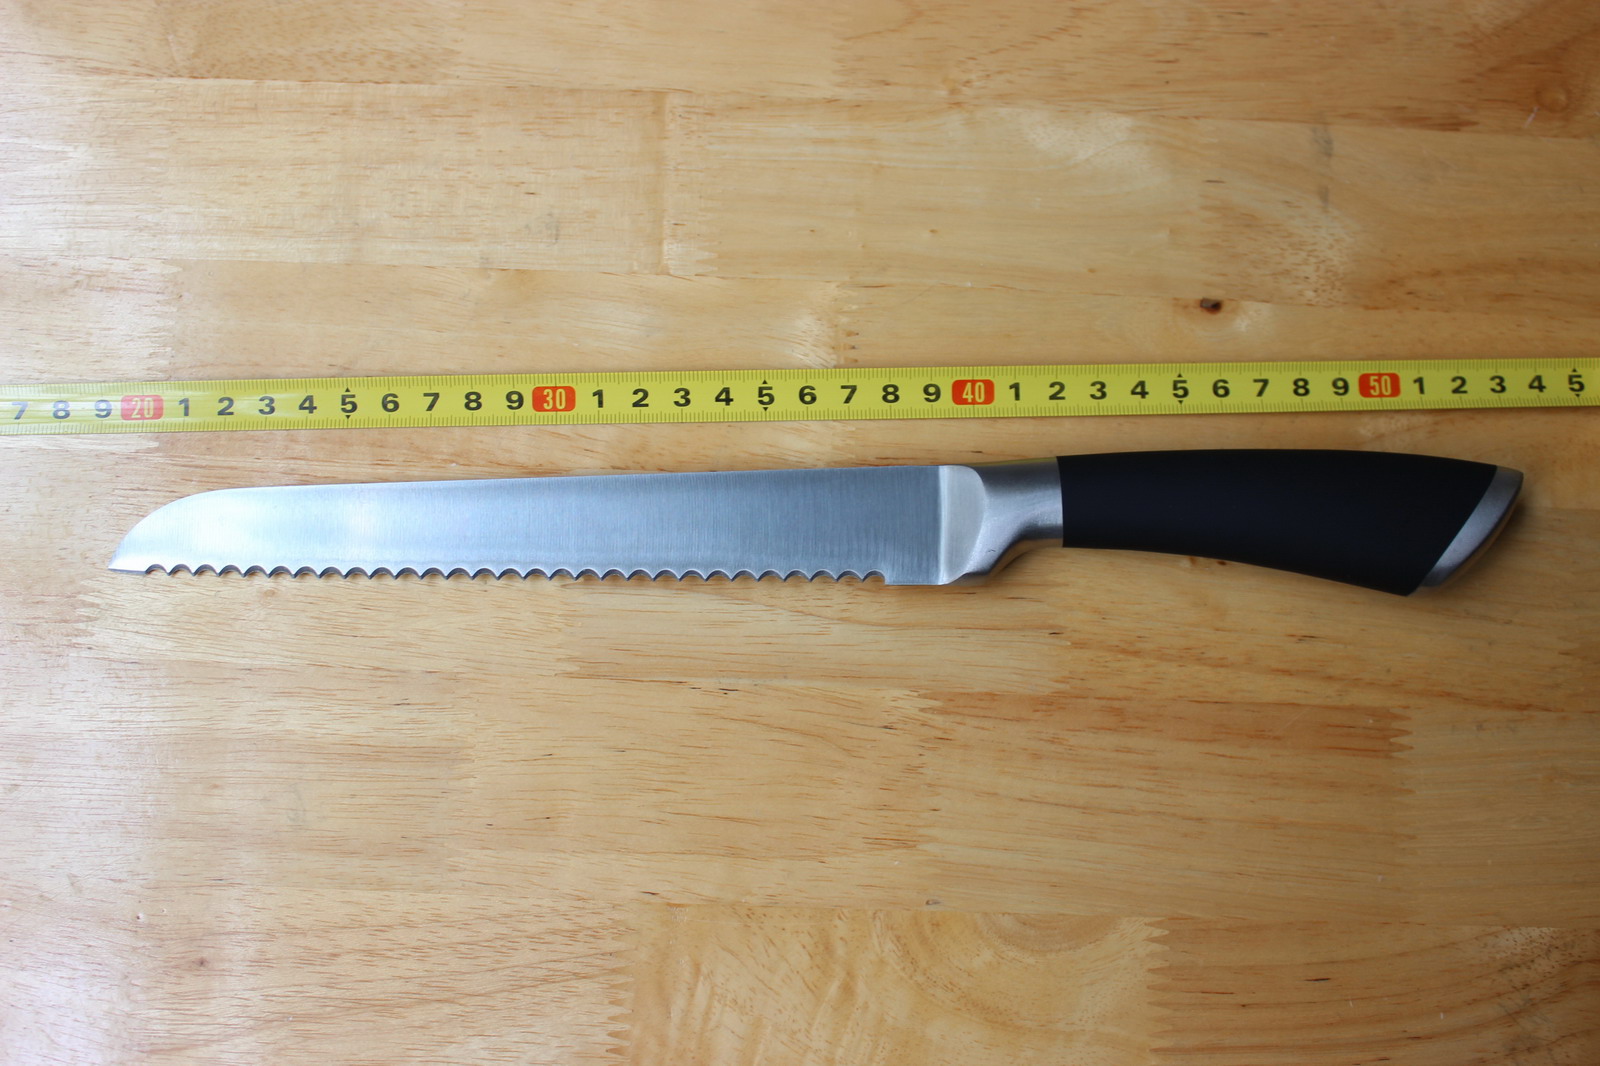 SP6003-2 bread knife